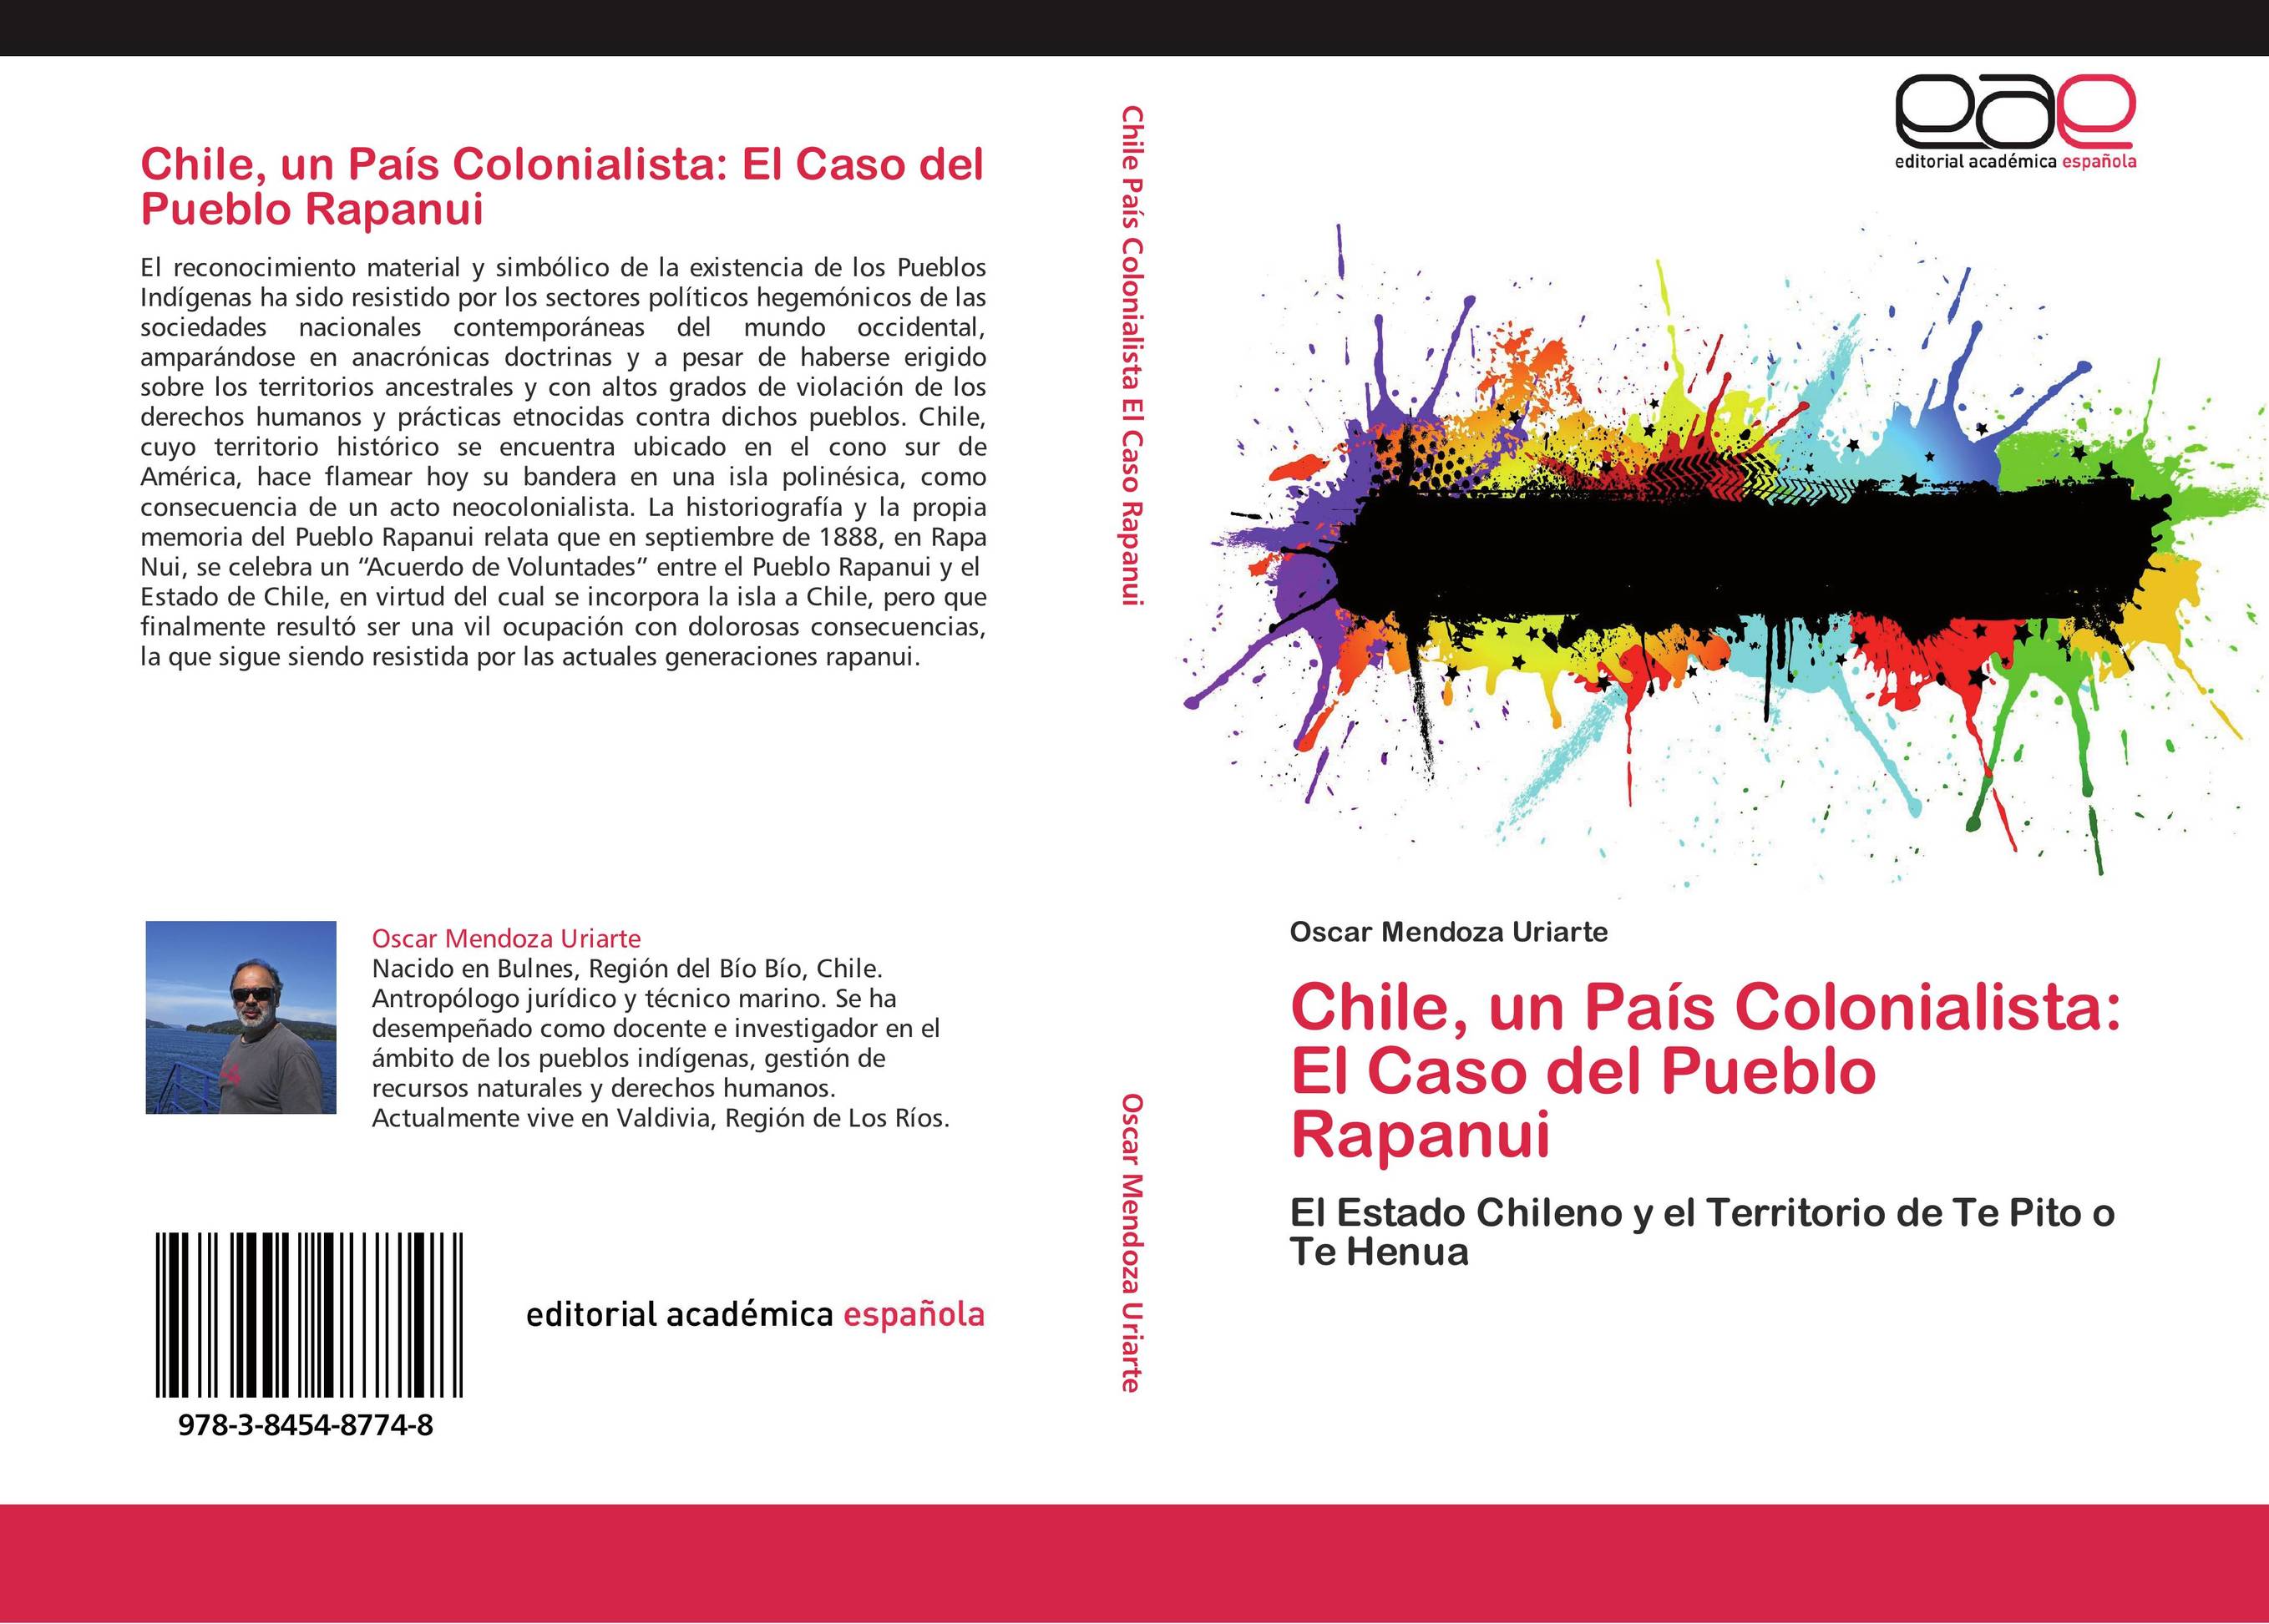 Chile, un País Colonialista: El Caso del Pueblo Rapanui